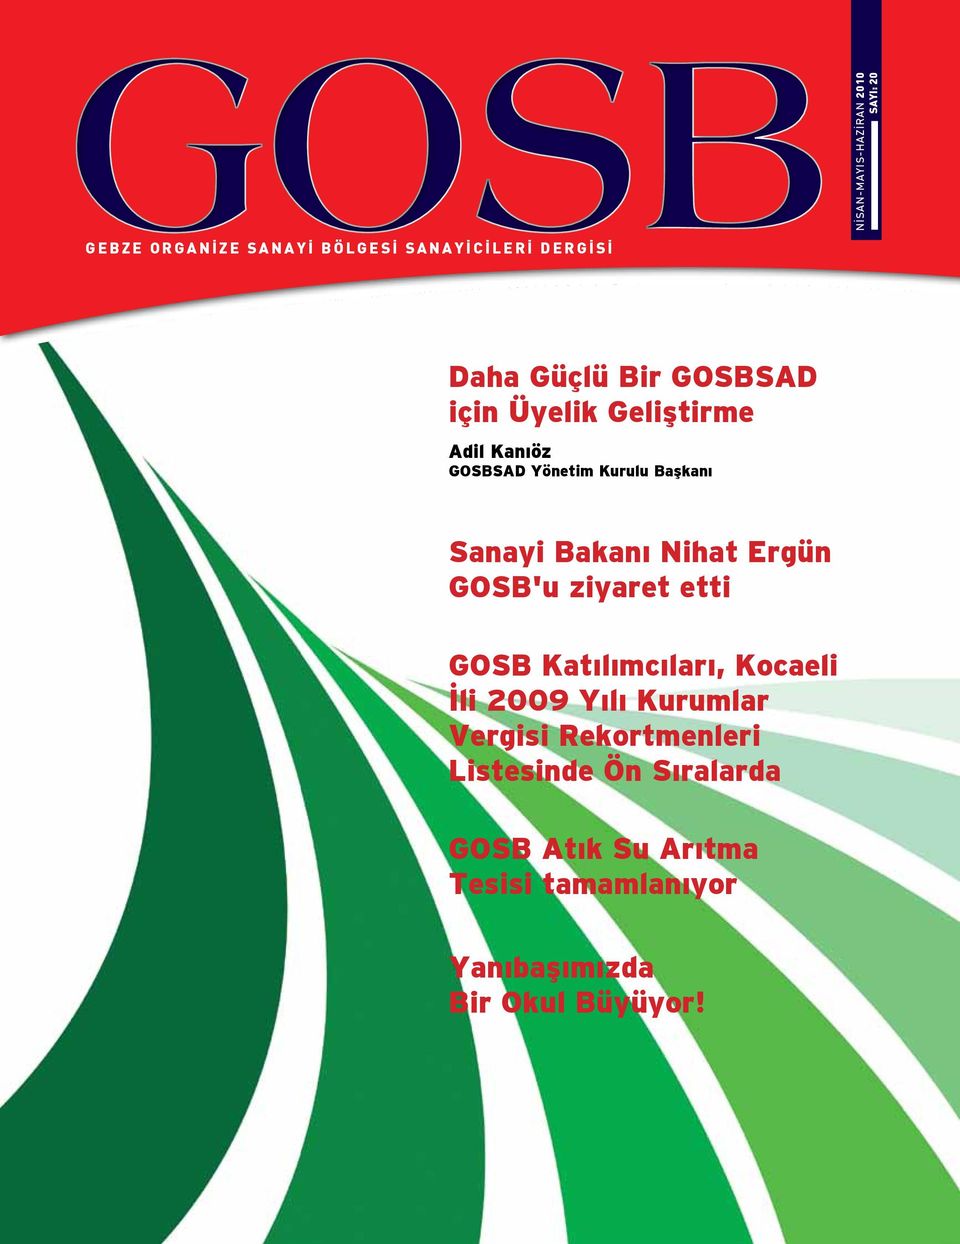 Bakanı Nihat Ergün GOSB'u ziyaret etti GOSB Katılımcıları, Kocaeli İli 2009 Yılı Kurumlar Vergisi